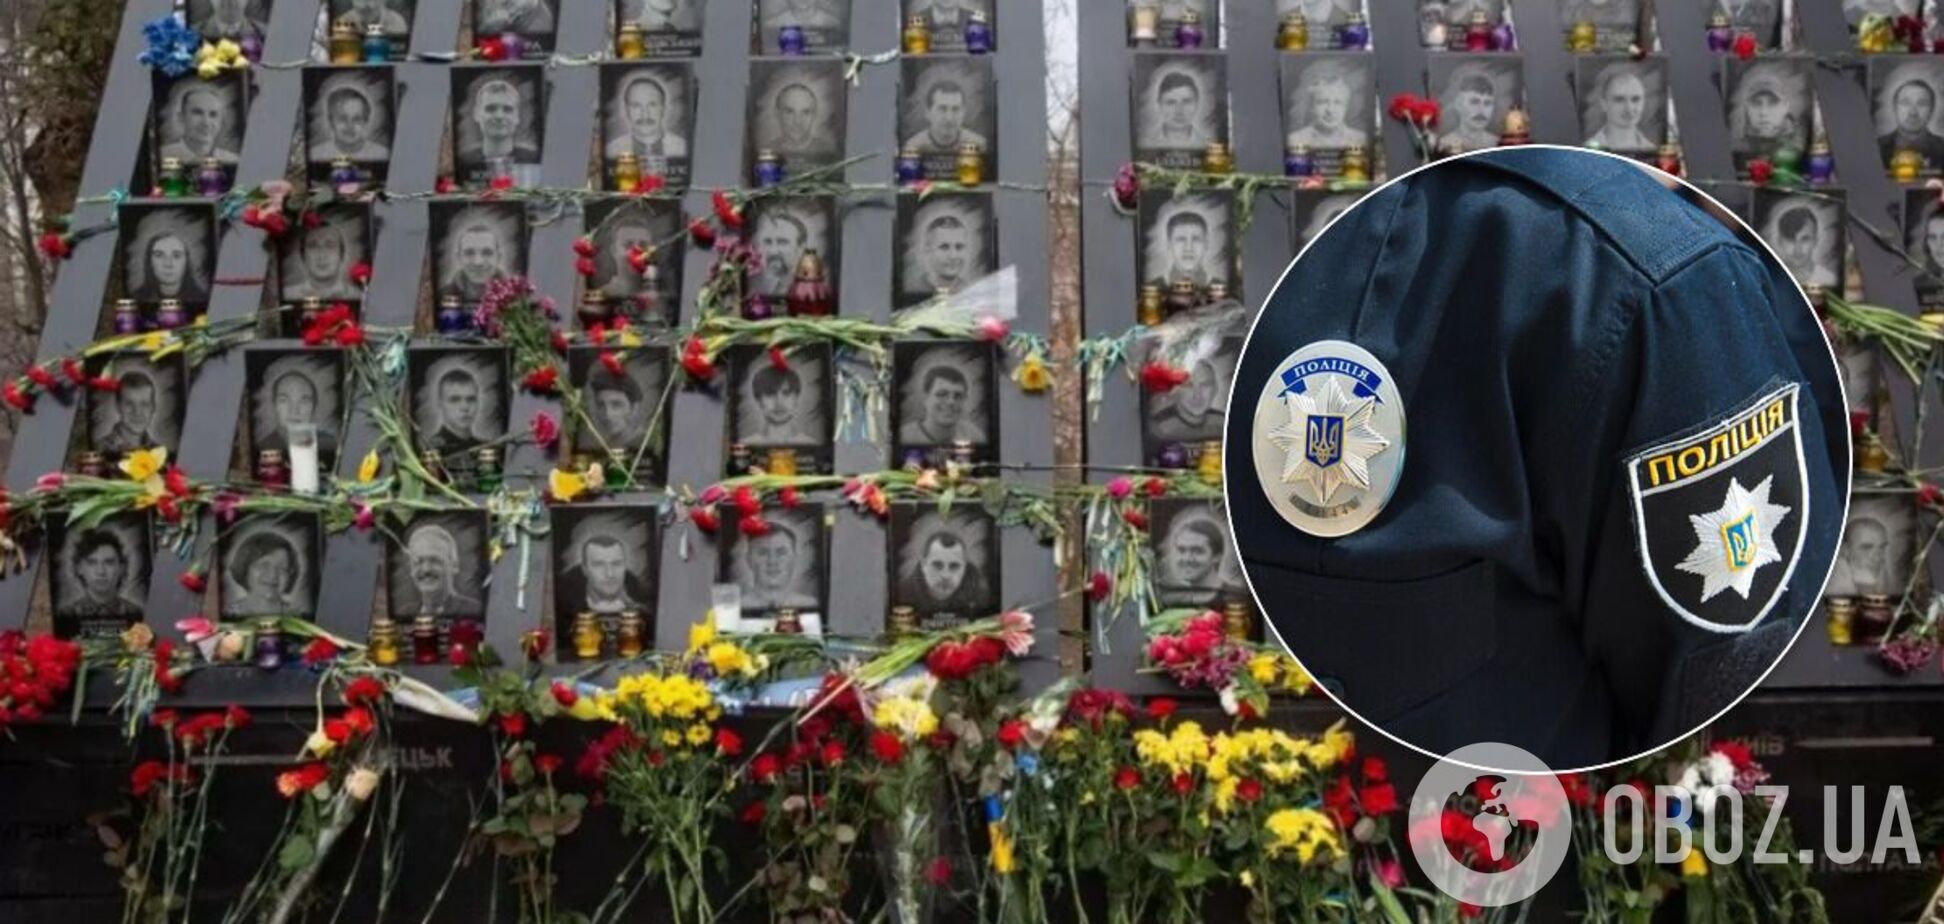 Во Львове двое киевлян осквернили мемориал Небесной сотни. Фото